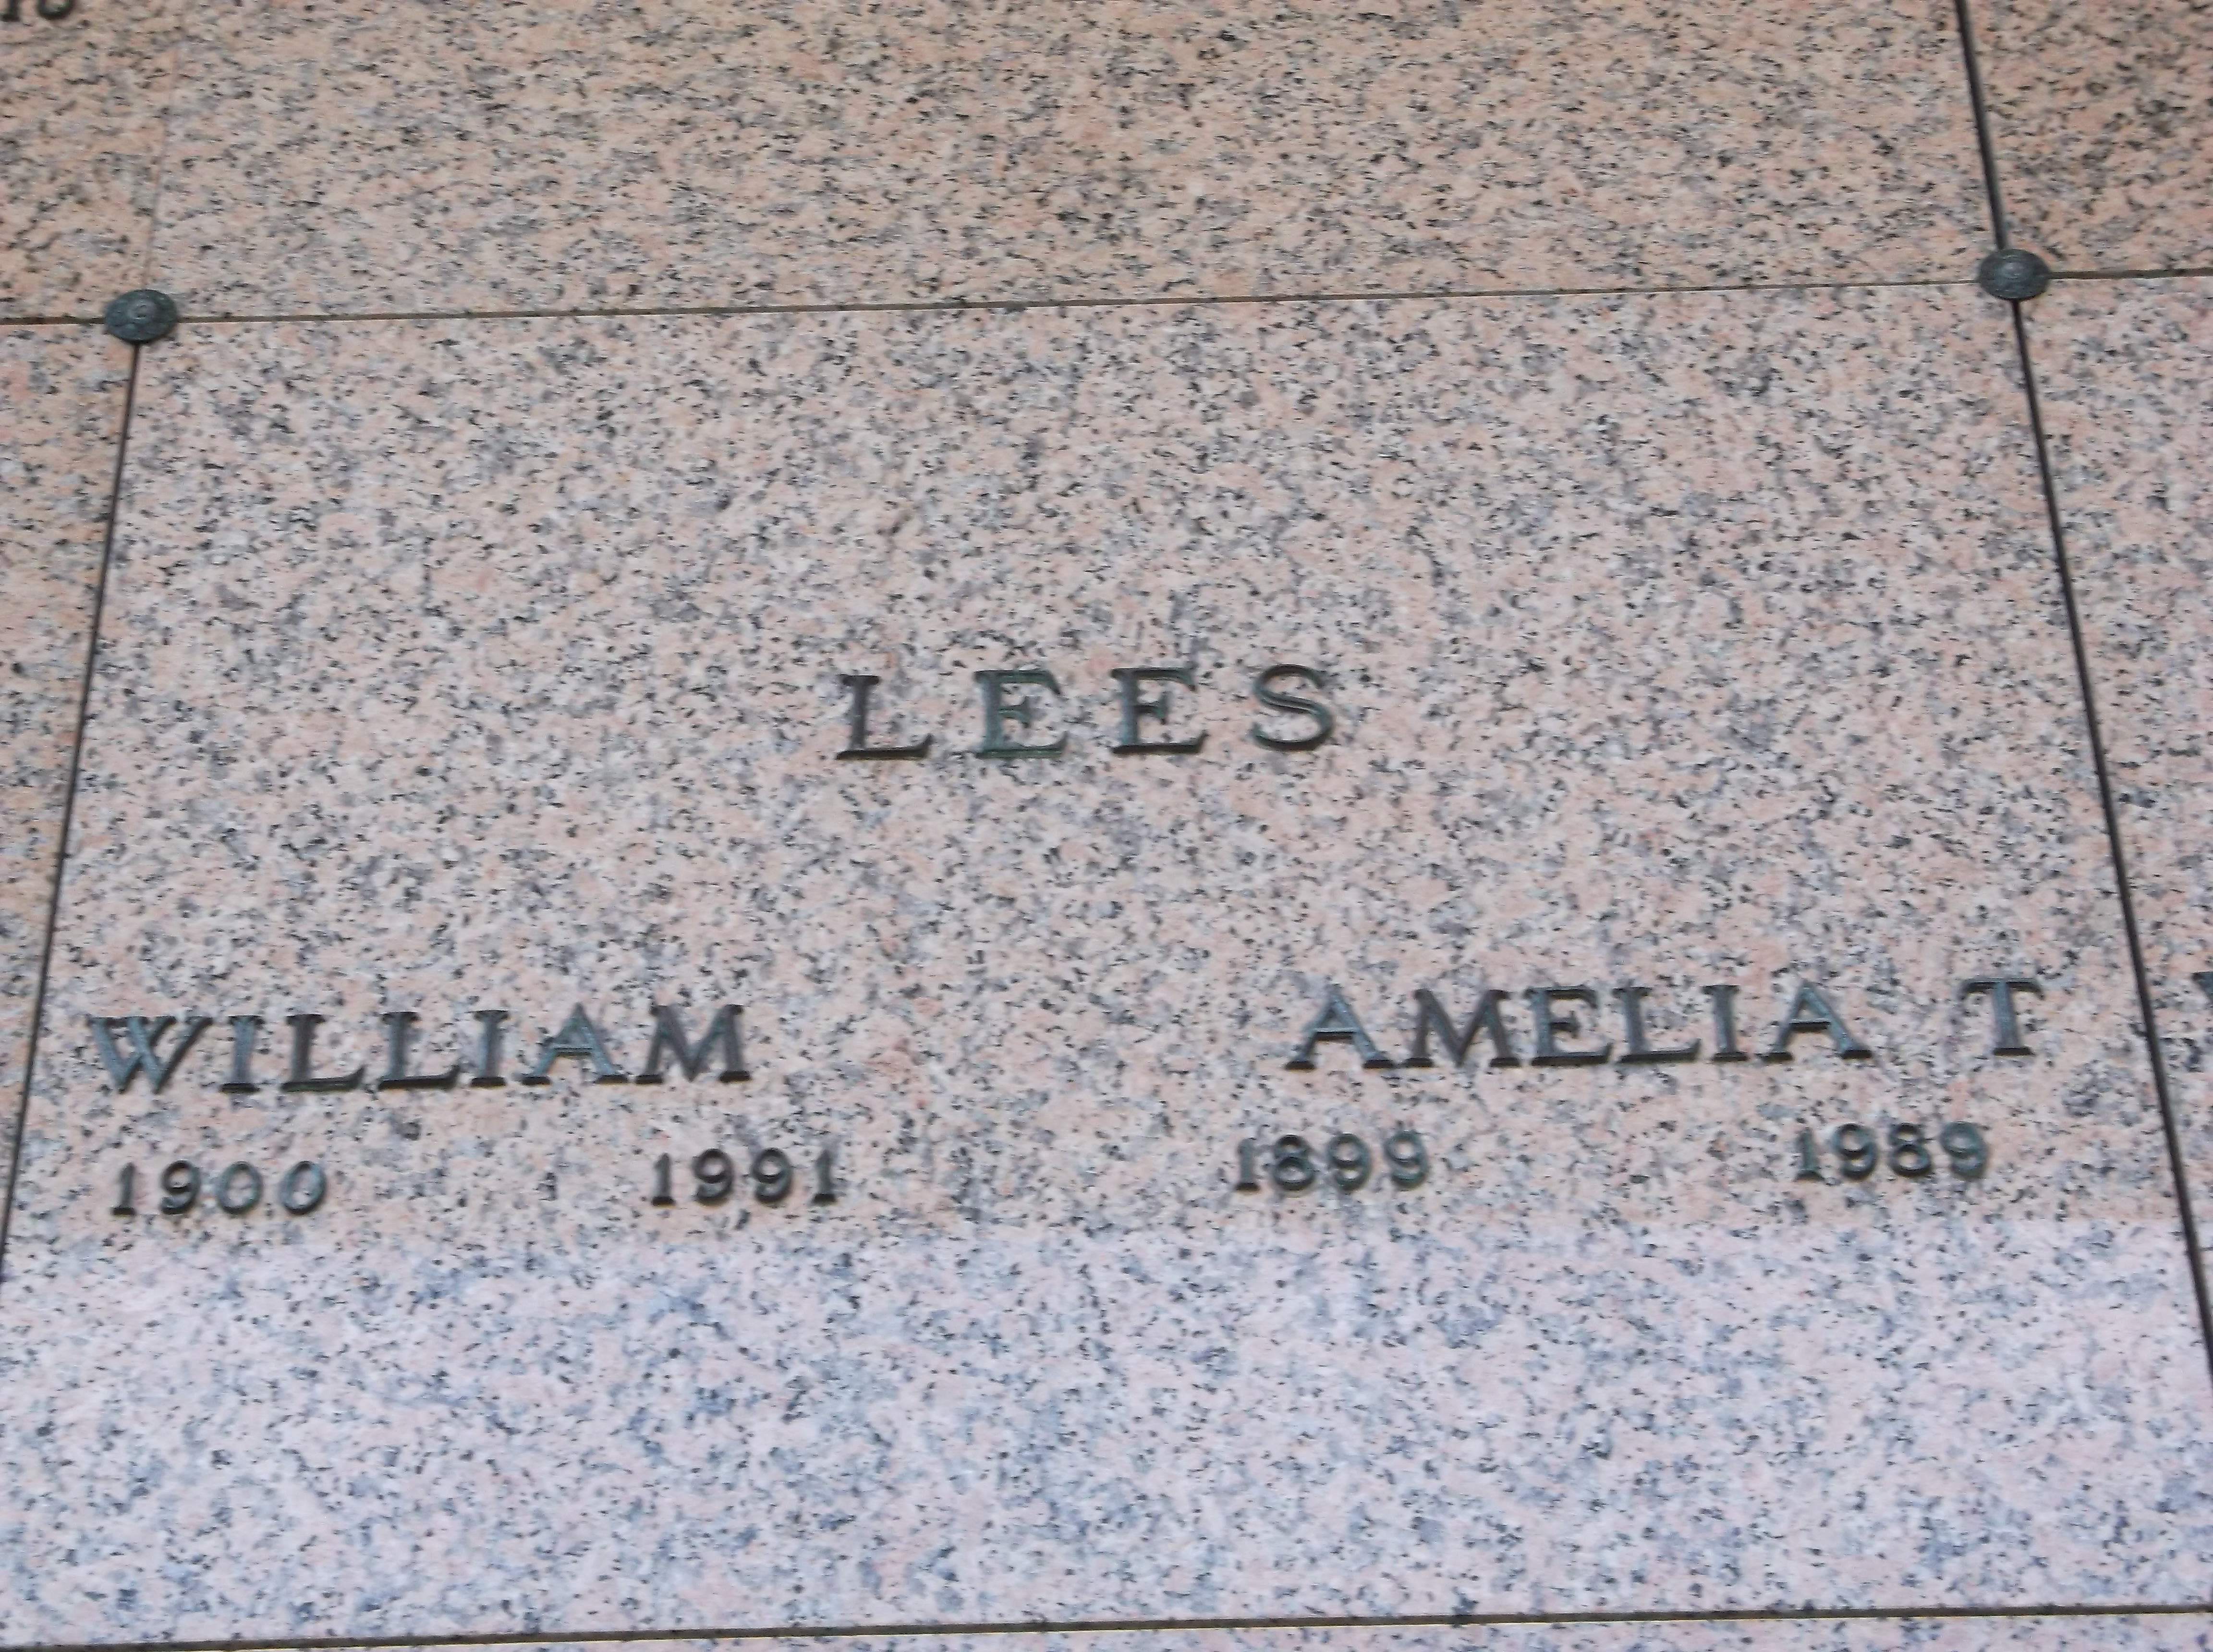 Amelia T Lees